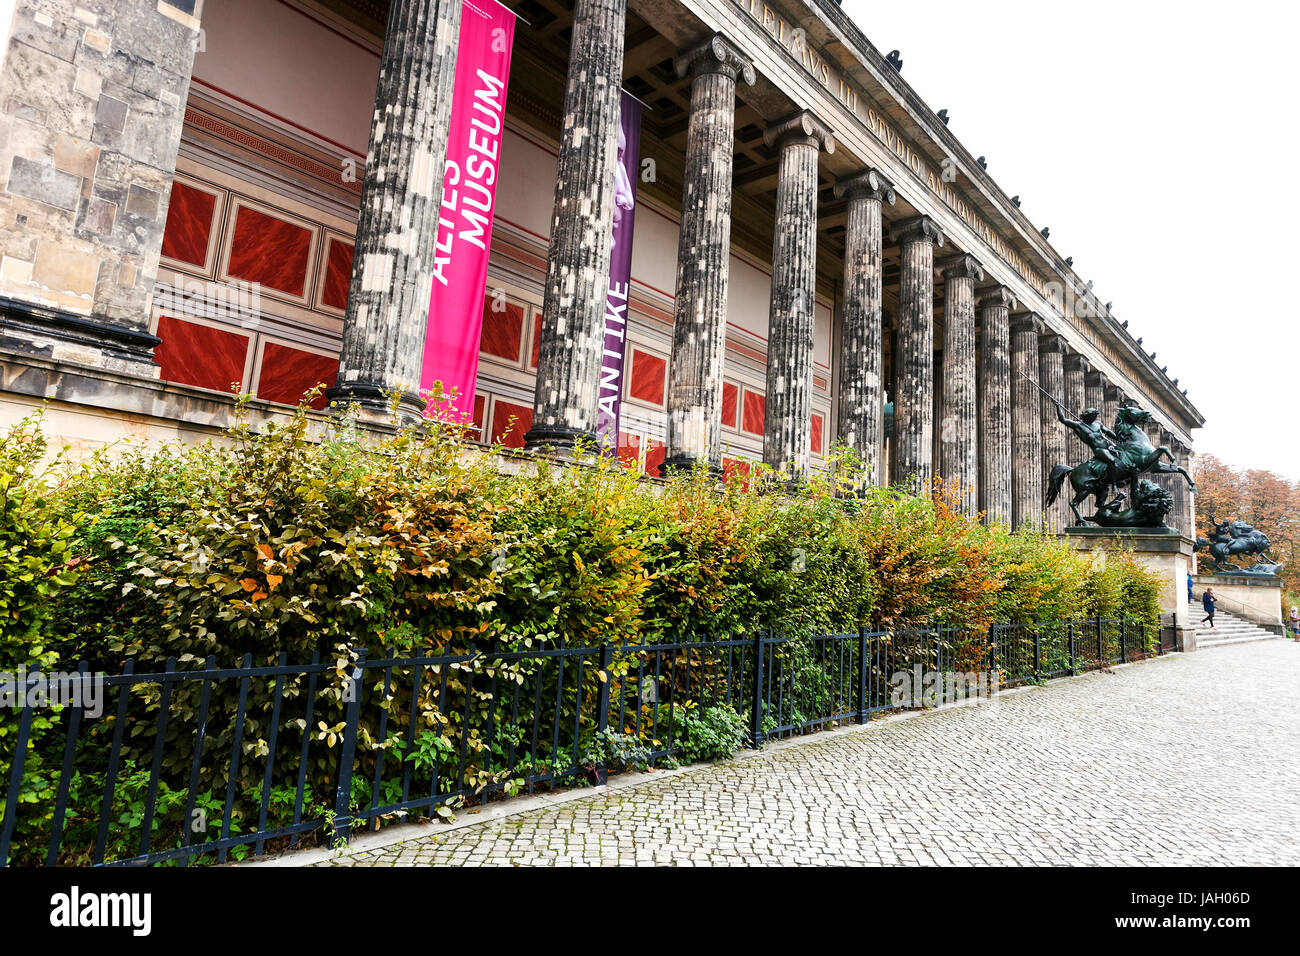 Berlino, Germania - 16 ottobre: facciata di Altes Museum (museo vecchio) di Berlino in Germania il 16 ottobre 2013. Il museo è stato costruito tra il 1823 e il 1830 dall'architetto Karl Friedrich Schinkel Foto Stock